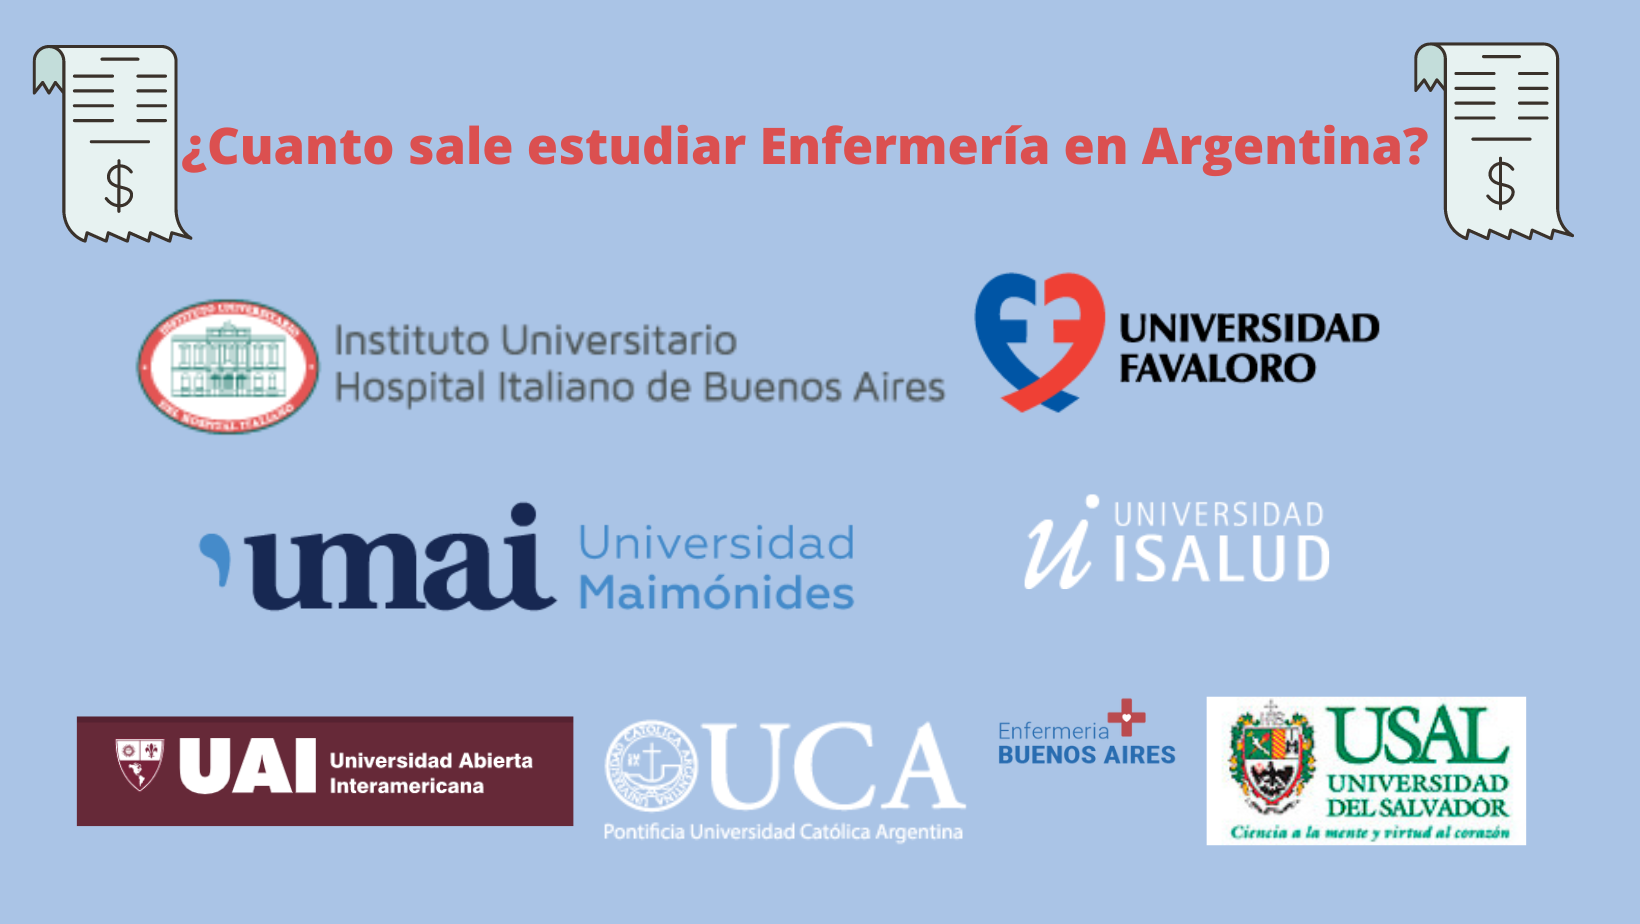 ¿Cuanto sale estudiar Enfermería en Argentina?